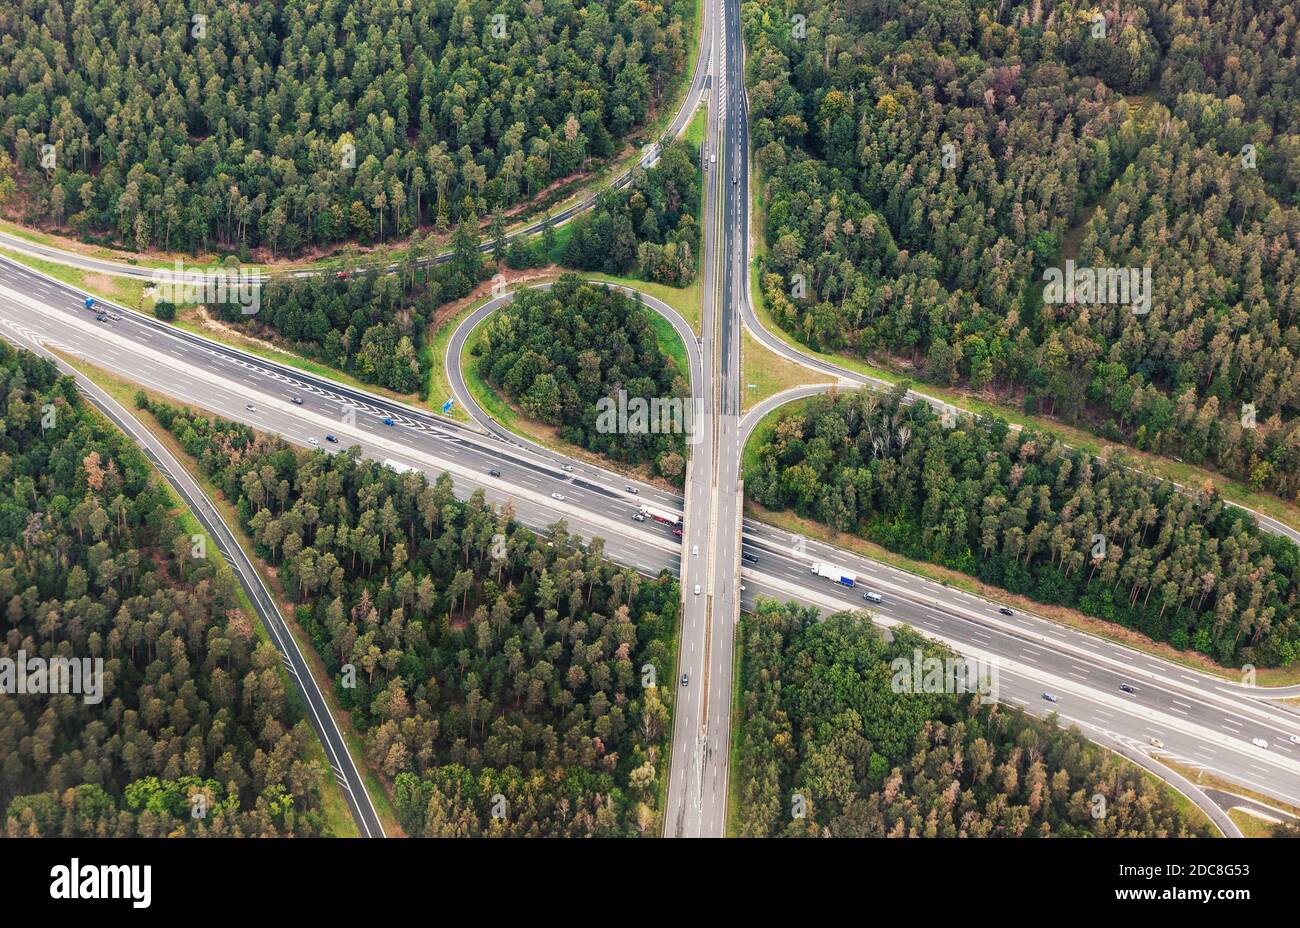 Vista aerea dell'incrocio autostradale con il traffico automobilistico. Vista dall'alto dall'alto dell'uccello, foto dell'incrocio stradale nell'ambiente forestale Foto Stock